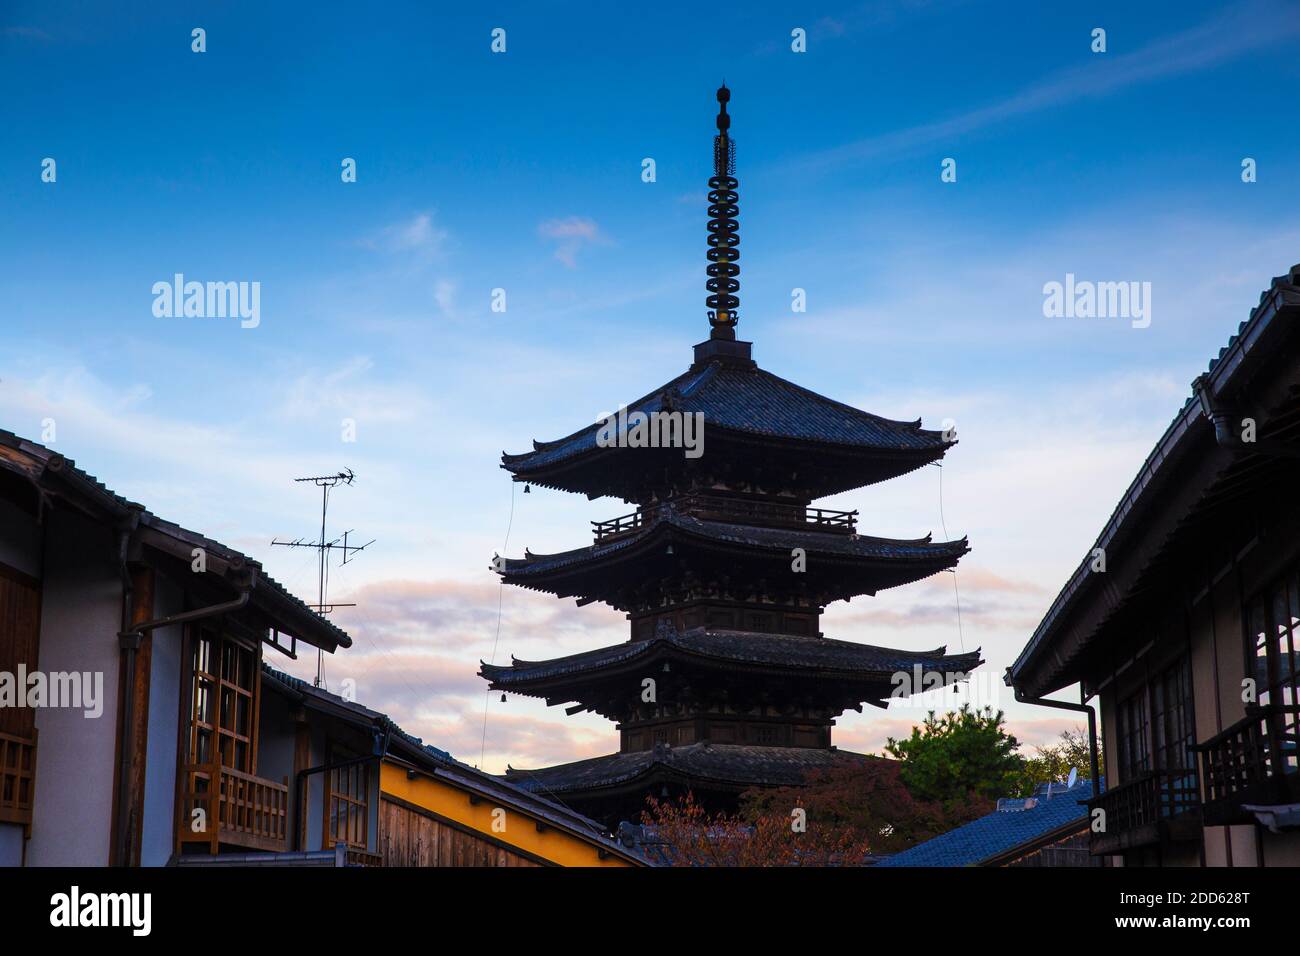 Japan, Kyoto, Gion, Yasaka Pagoda Stock Photo